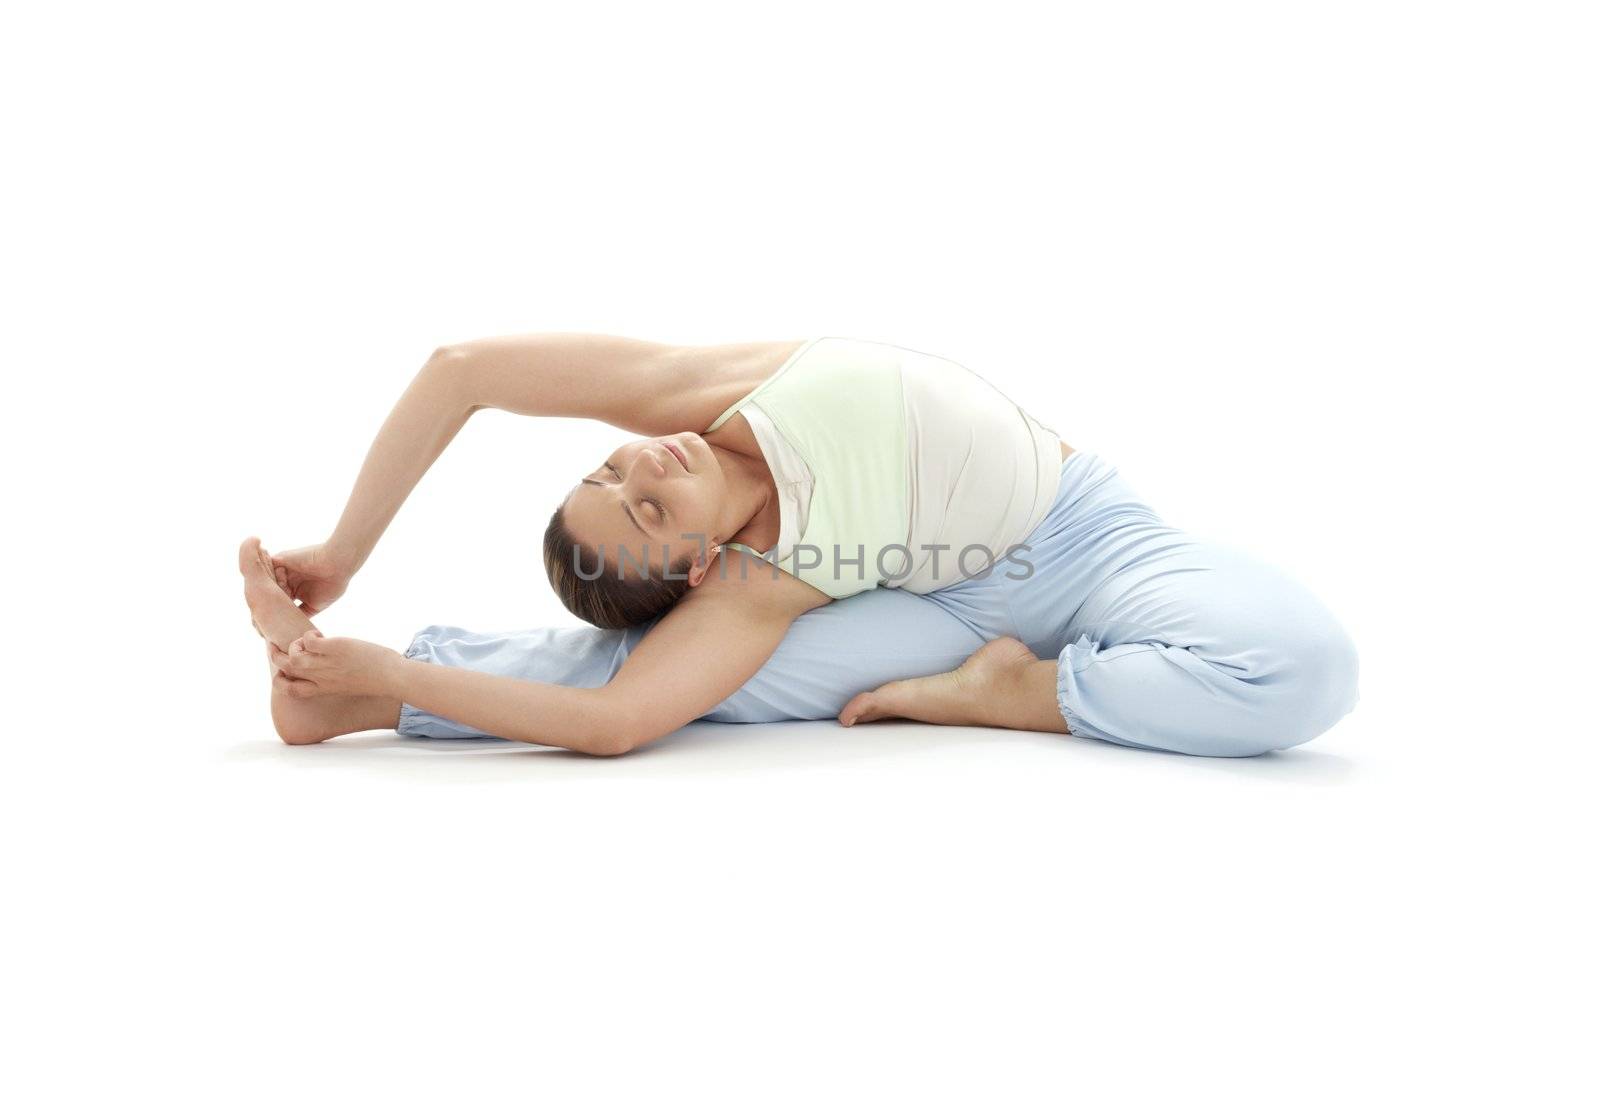 ashtanga yoga #4 by dolgachov